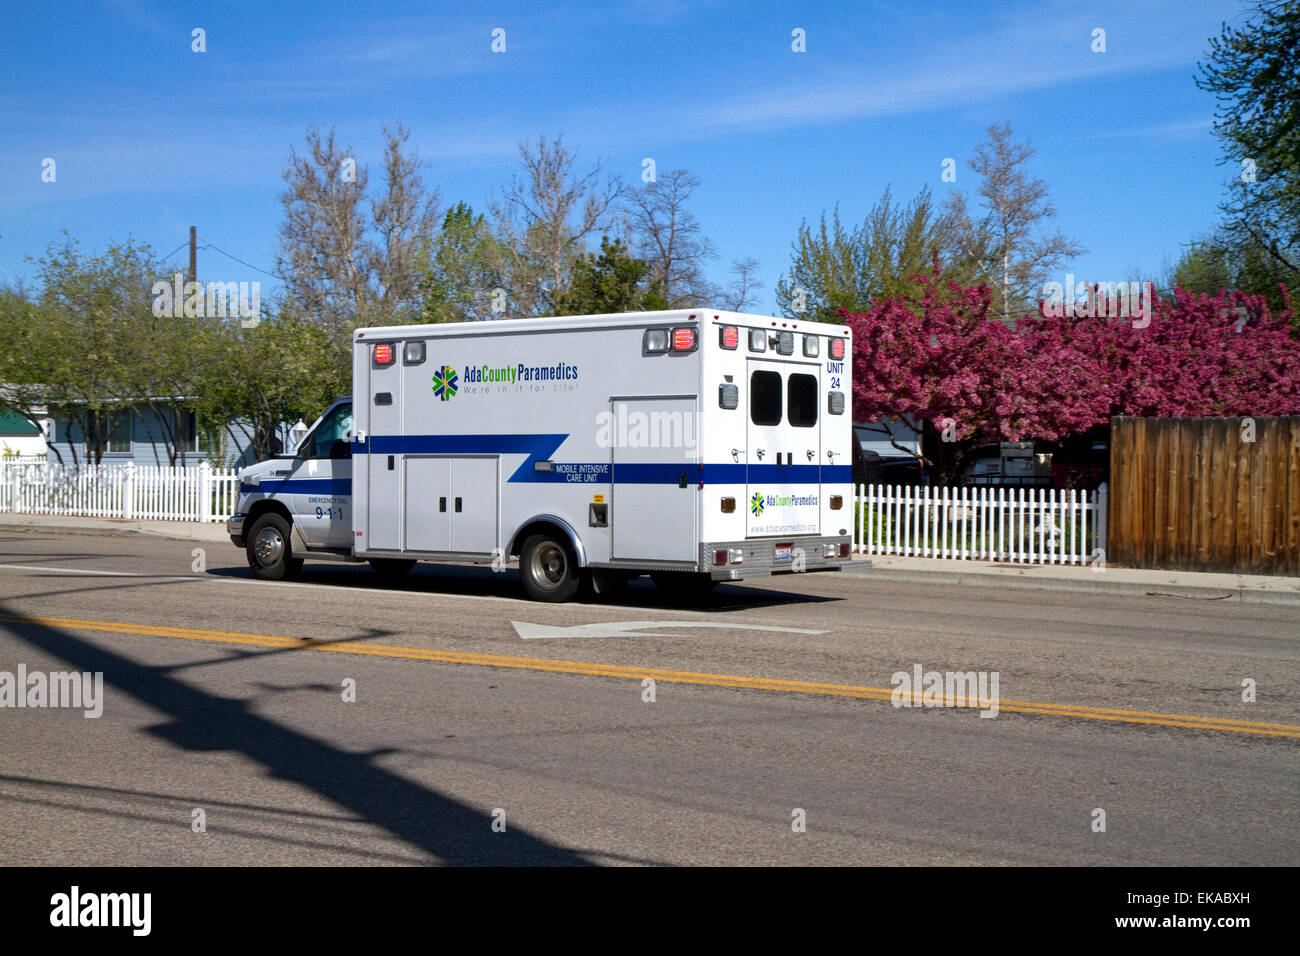 Ada Comté ambulance EMS répondant à une urgence médicale dans la région de Boise, Idaho, USA. Banque D'Images